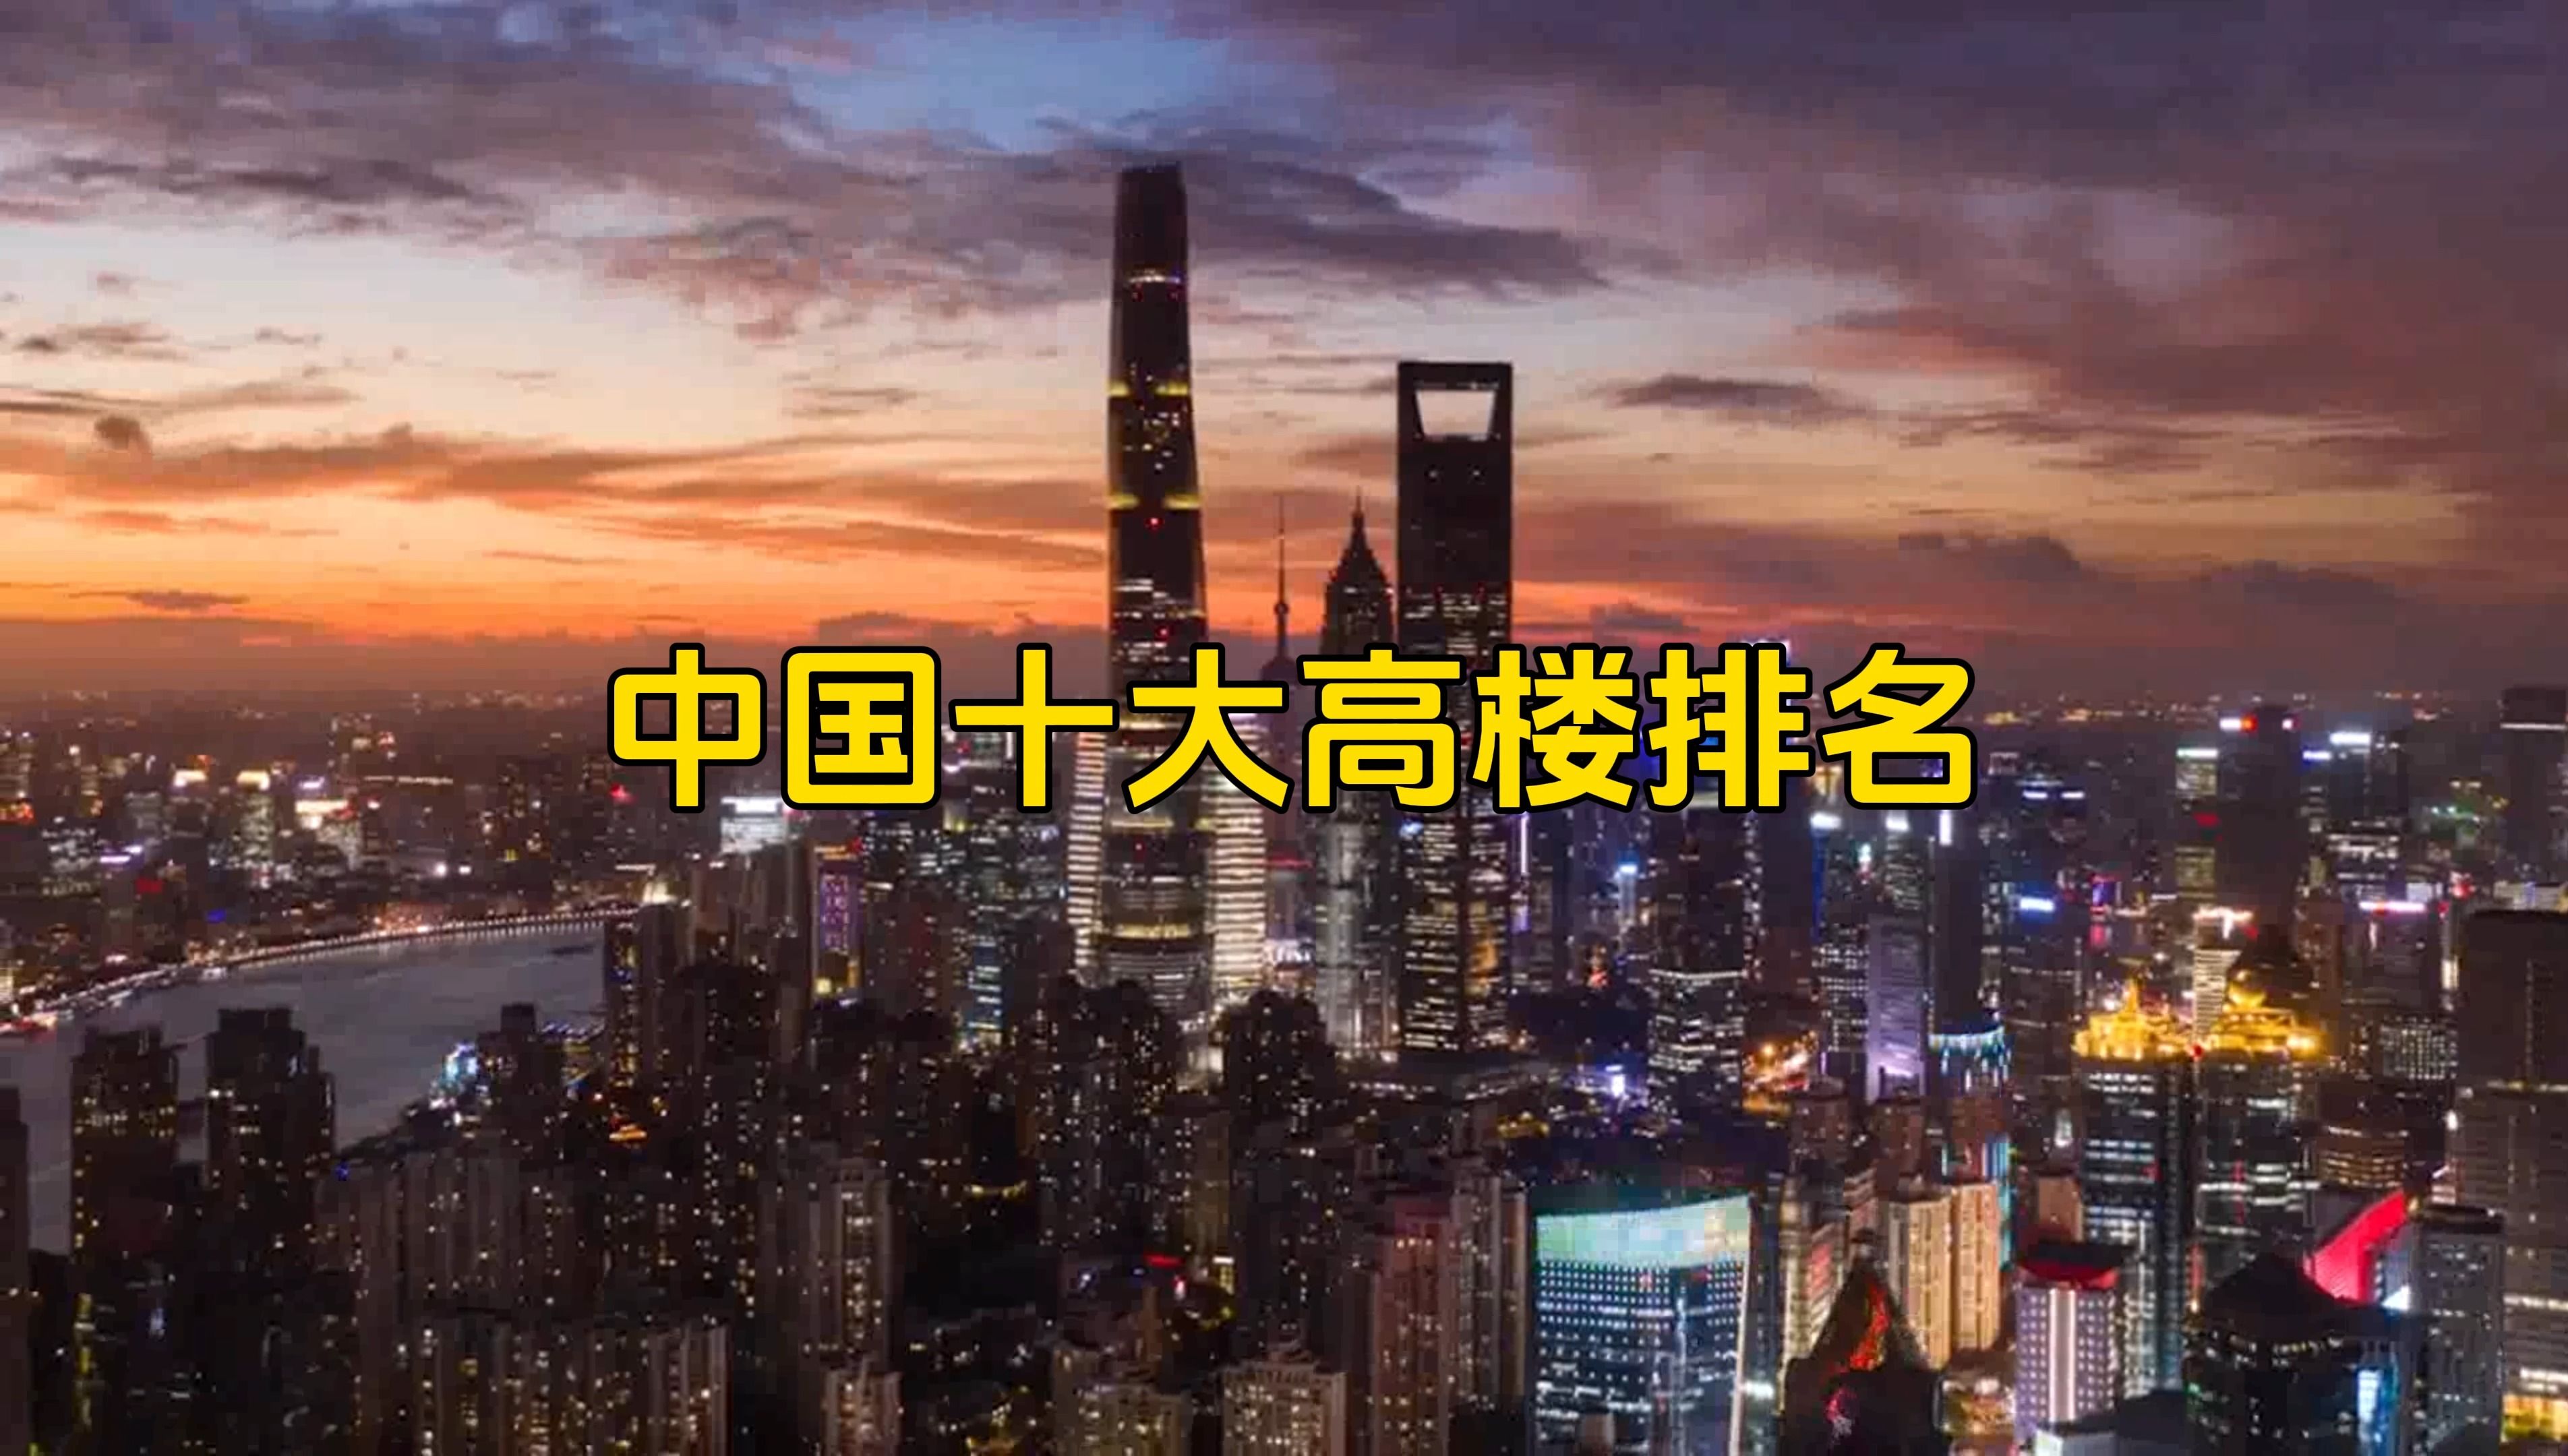 最新中国十大高楼排行榜